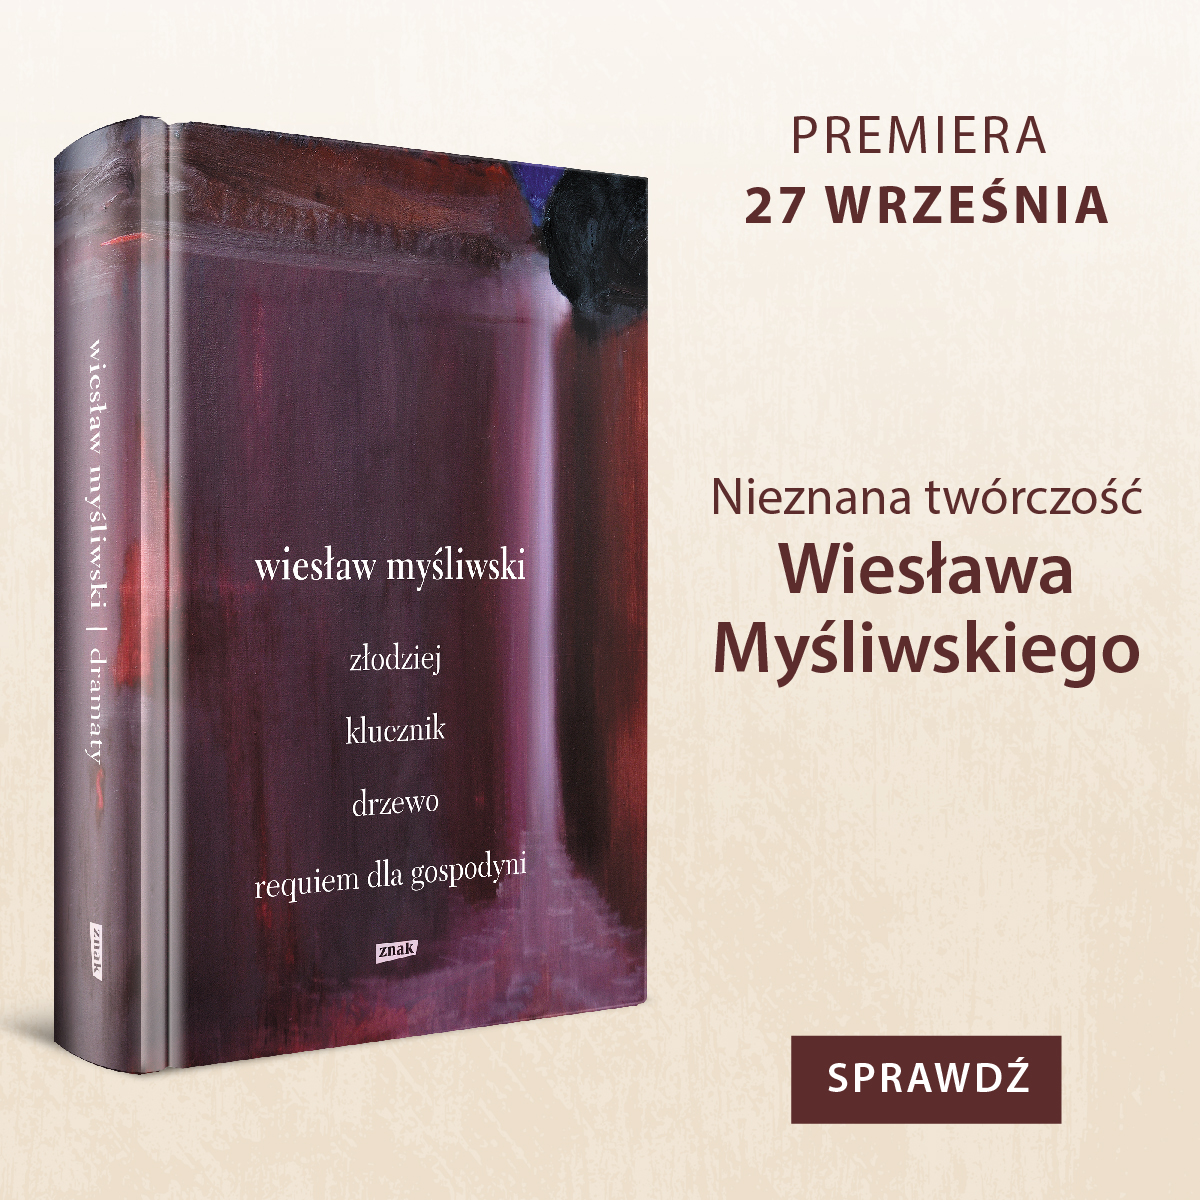 Zdjęcie Dramaty. Złodziej, Klucznik, Drzewo, Requiem dla gospodyni - Wiesław Myśliwski #1